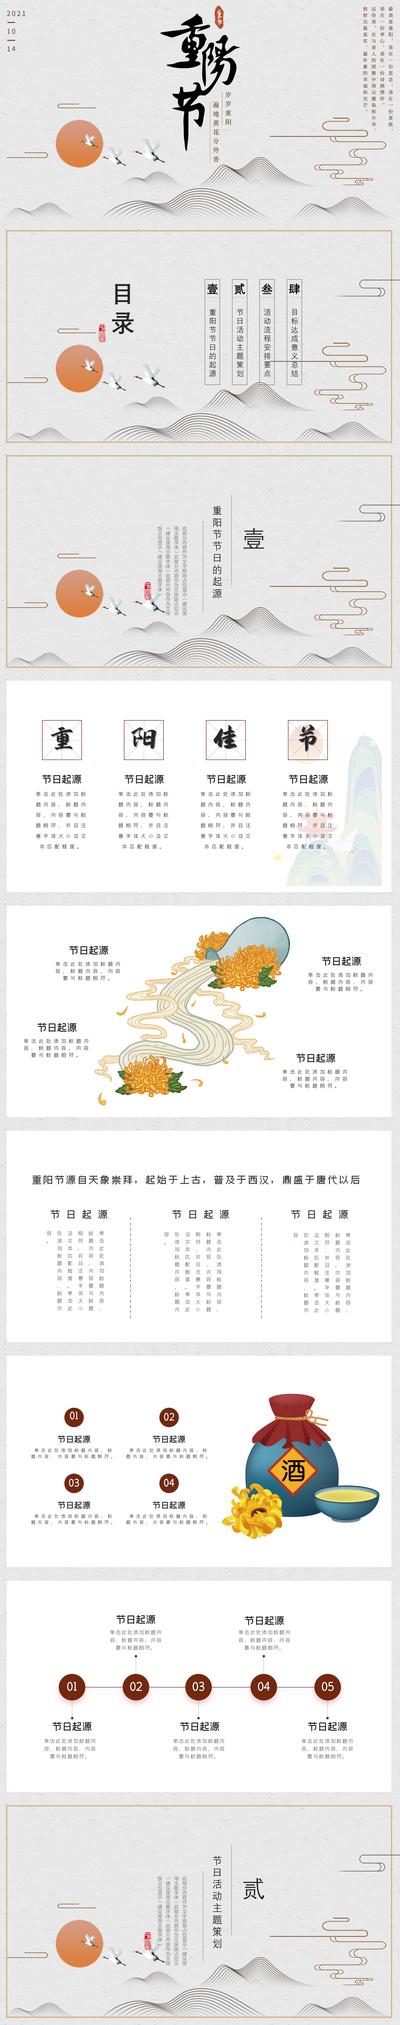 南门网 PPT 中国传统节日 重阳节 插画 手绘